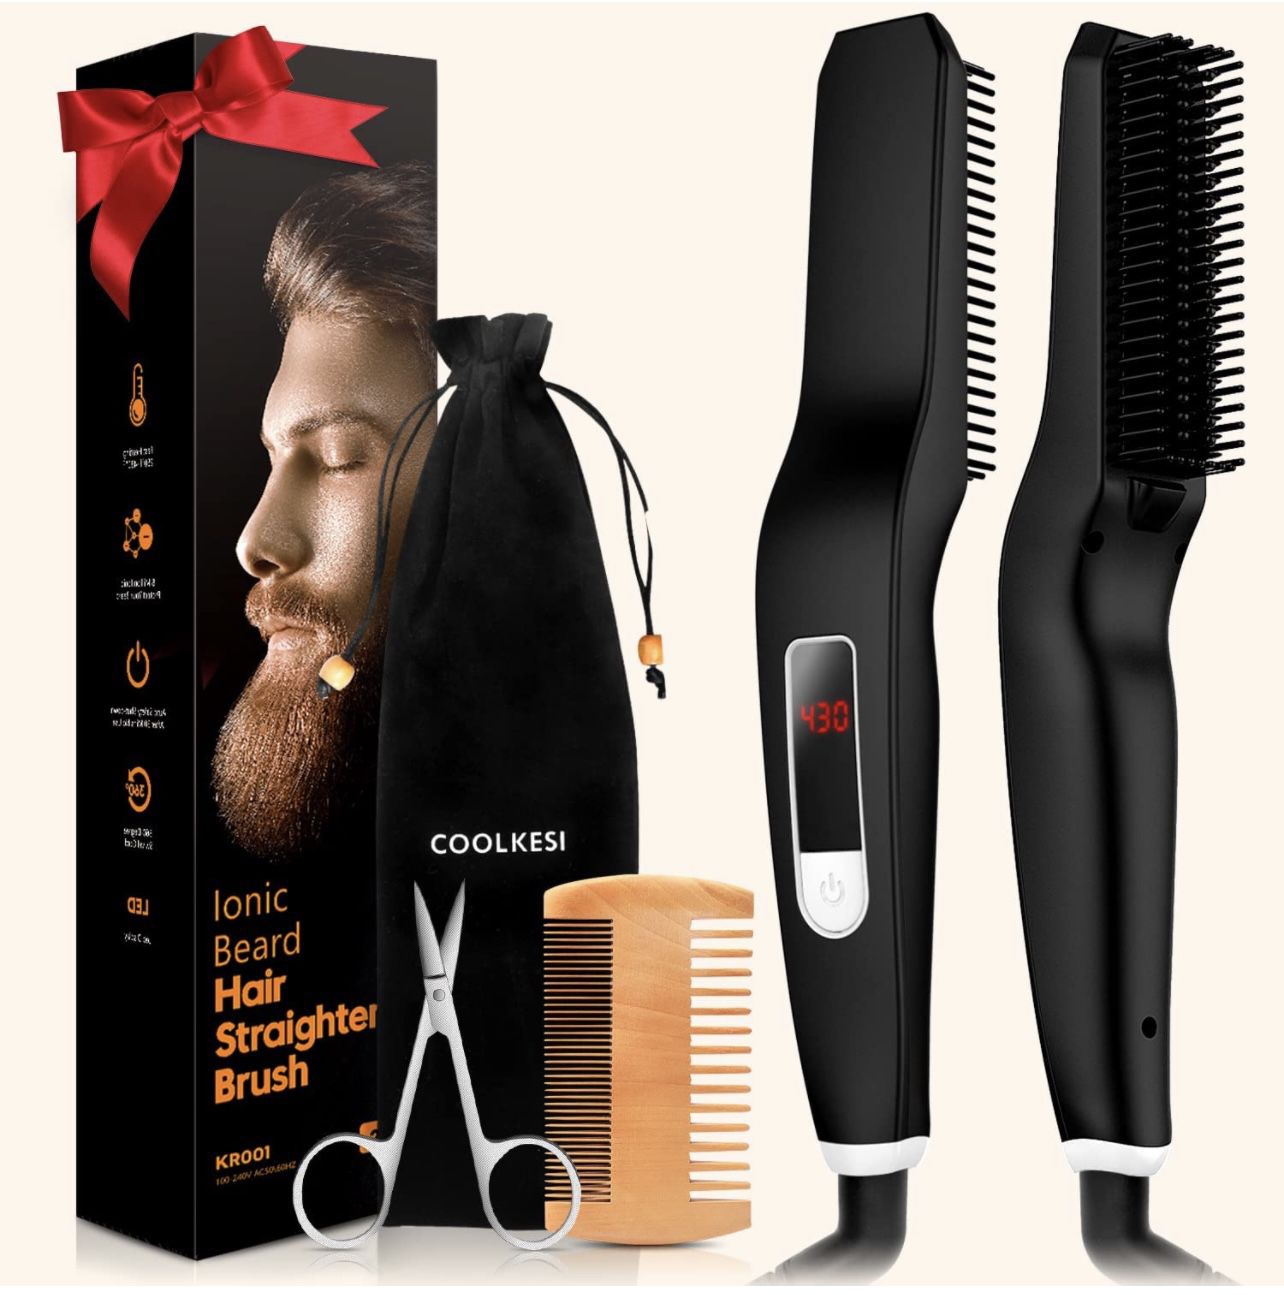  Beard Hair Straightener Brush 